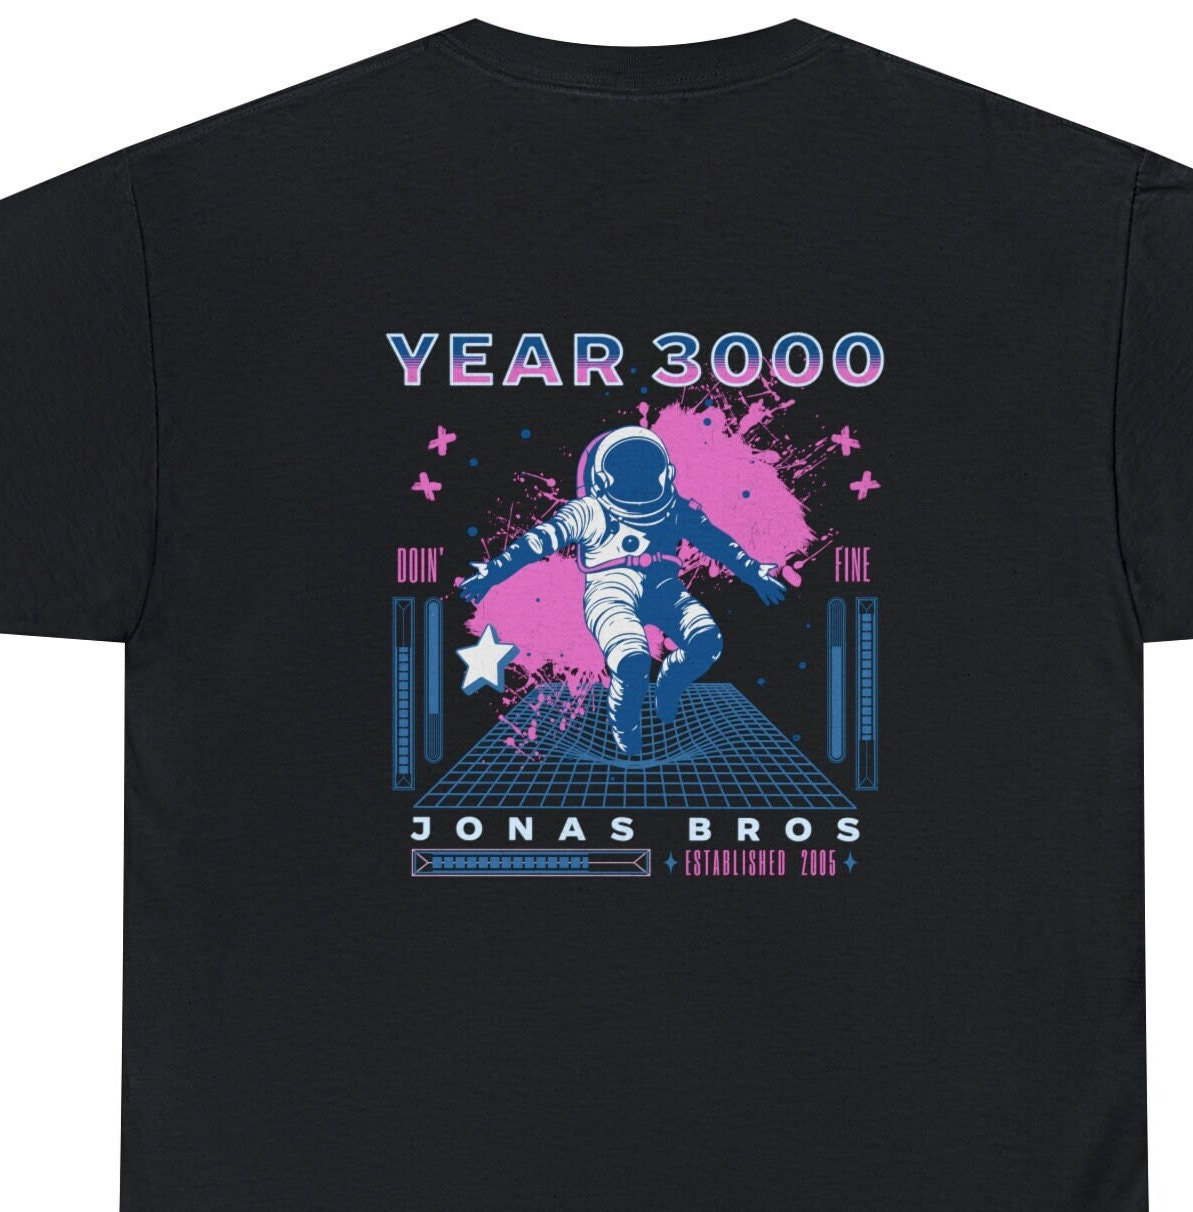 Jonas Brothers Dodger Stadium T-shirt the Tour Jobros 